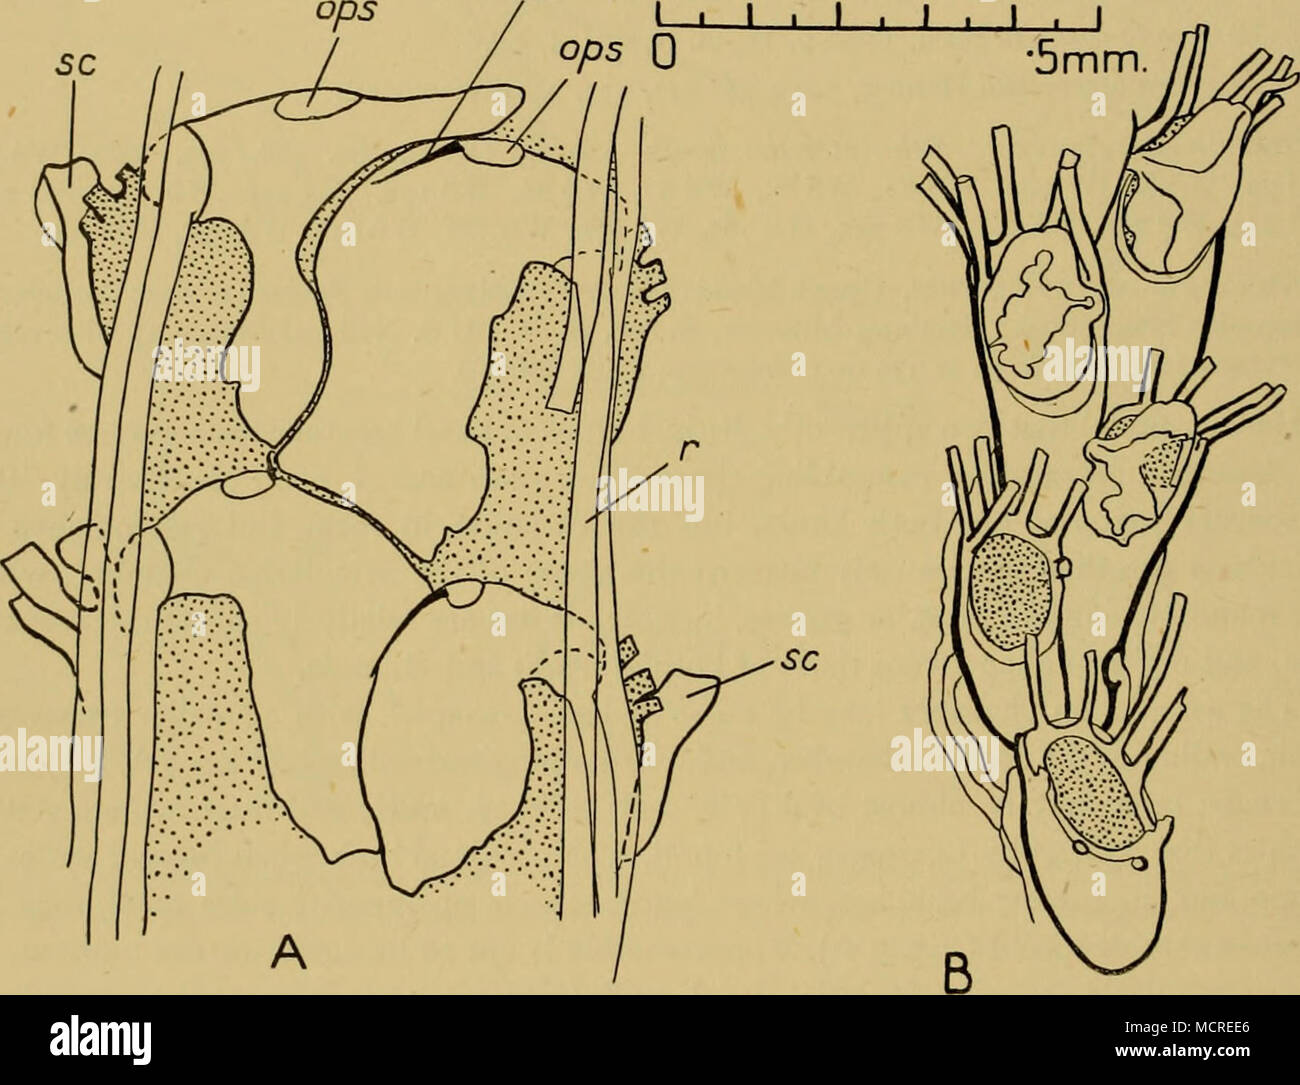 . Abb. 3. A. Amastigia benemunita (Busk). St. WS 82, Falkland Inseln. Basal Blick auf eine schmale Zweig mit großen basal avicularium. Die zugrunde liegenden zooecia sind gepunktet, und die Umrisse Ihrer basalen Wände aus Gründen der Übersichtlichkeit weggelassen. Drei Kiefer sind dargestellt, eine offene und sehr kurz. Die vierte hetero-zooecium hat eine opesia, aber keine Unterkiefer. B. A. benemunita (Busk). Challenger Str. 315. Junge Kolonie mit ancestrula. 34.11.12. 47.mdb. Unterkiefer, Ops. opesia von heterozooecium, r. feinstwurzeln, sc. scutum. basale heterozooecia, die größer sind, es verfügt über eine Kammer mit variabler gestalten. Der Unterkiefer ist Arti Stockfoto